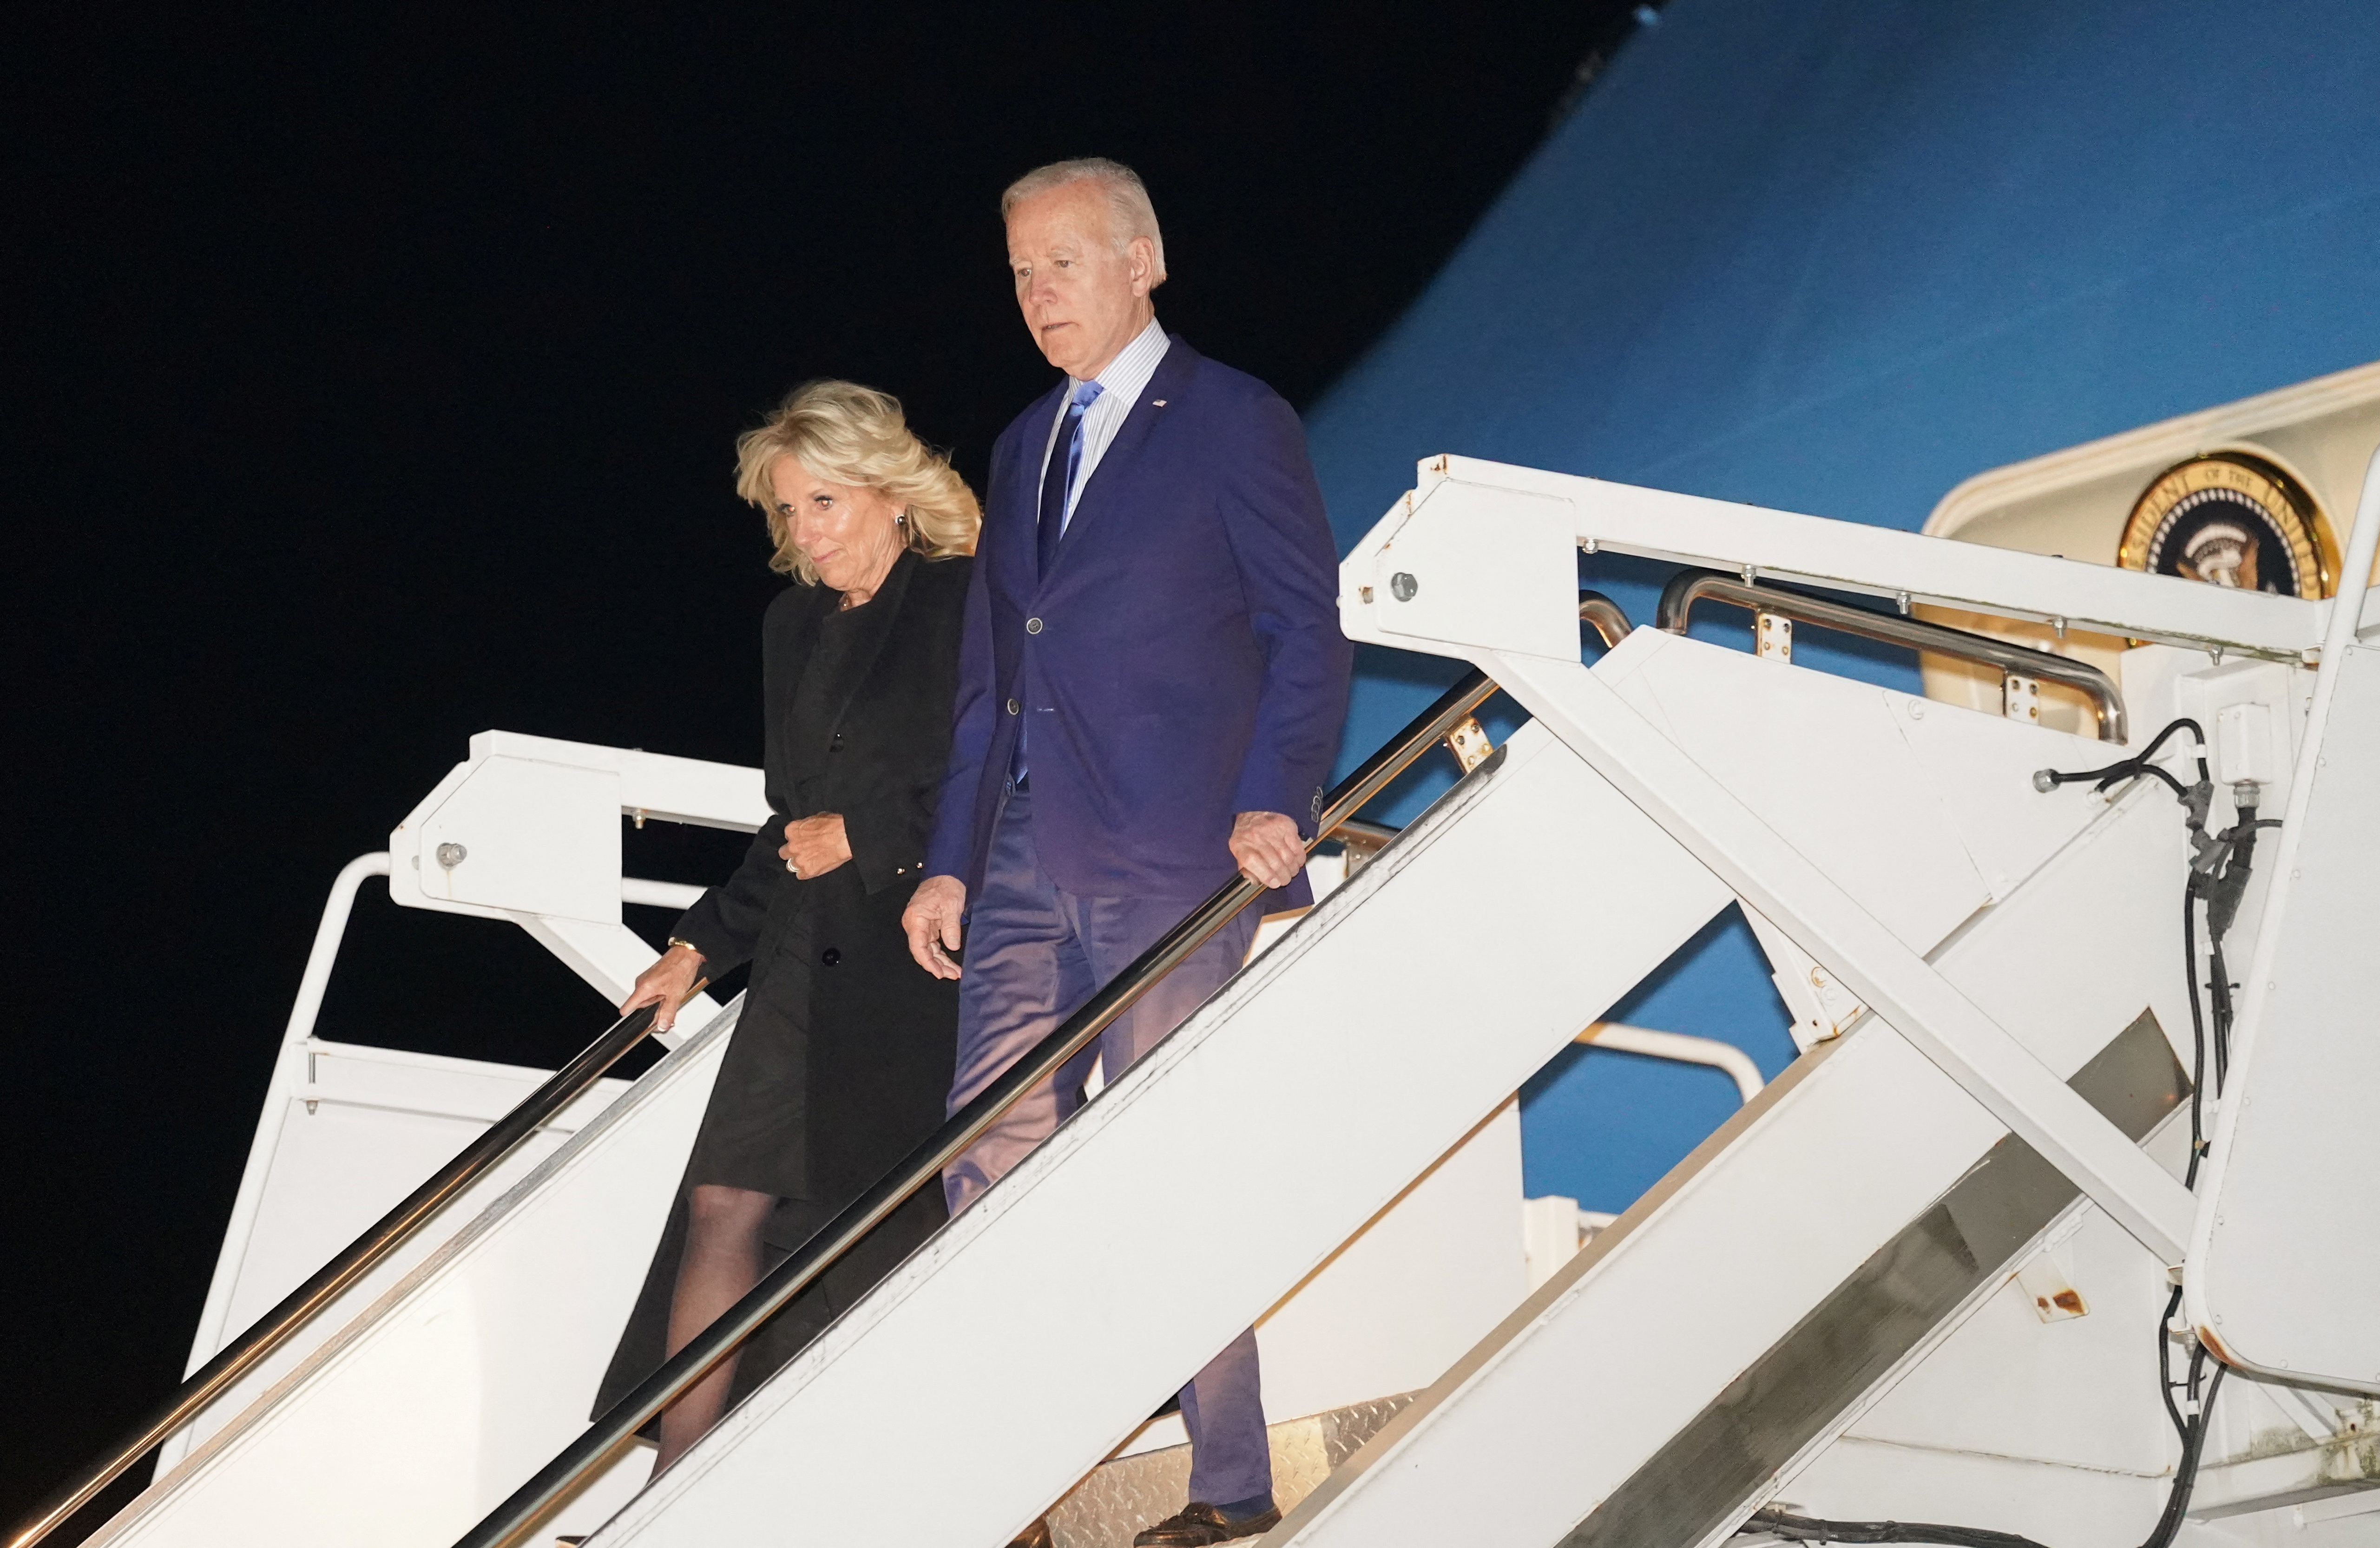 Algunos ya están en la capital británica, como Biden, quien llegó durante la noche junto a su esposa Jill